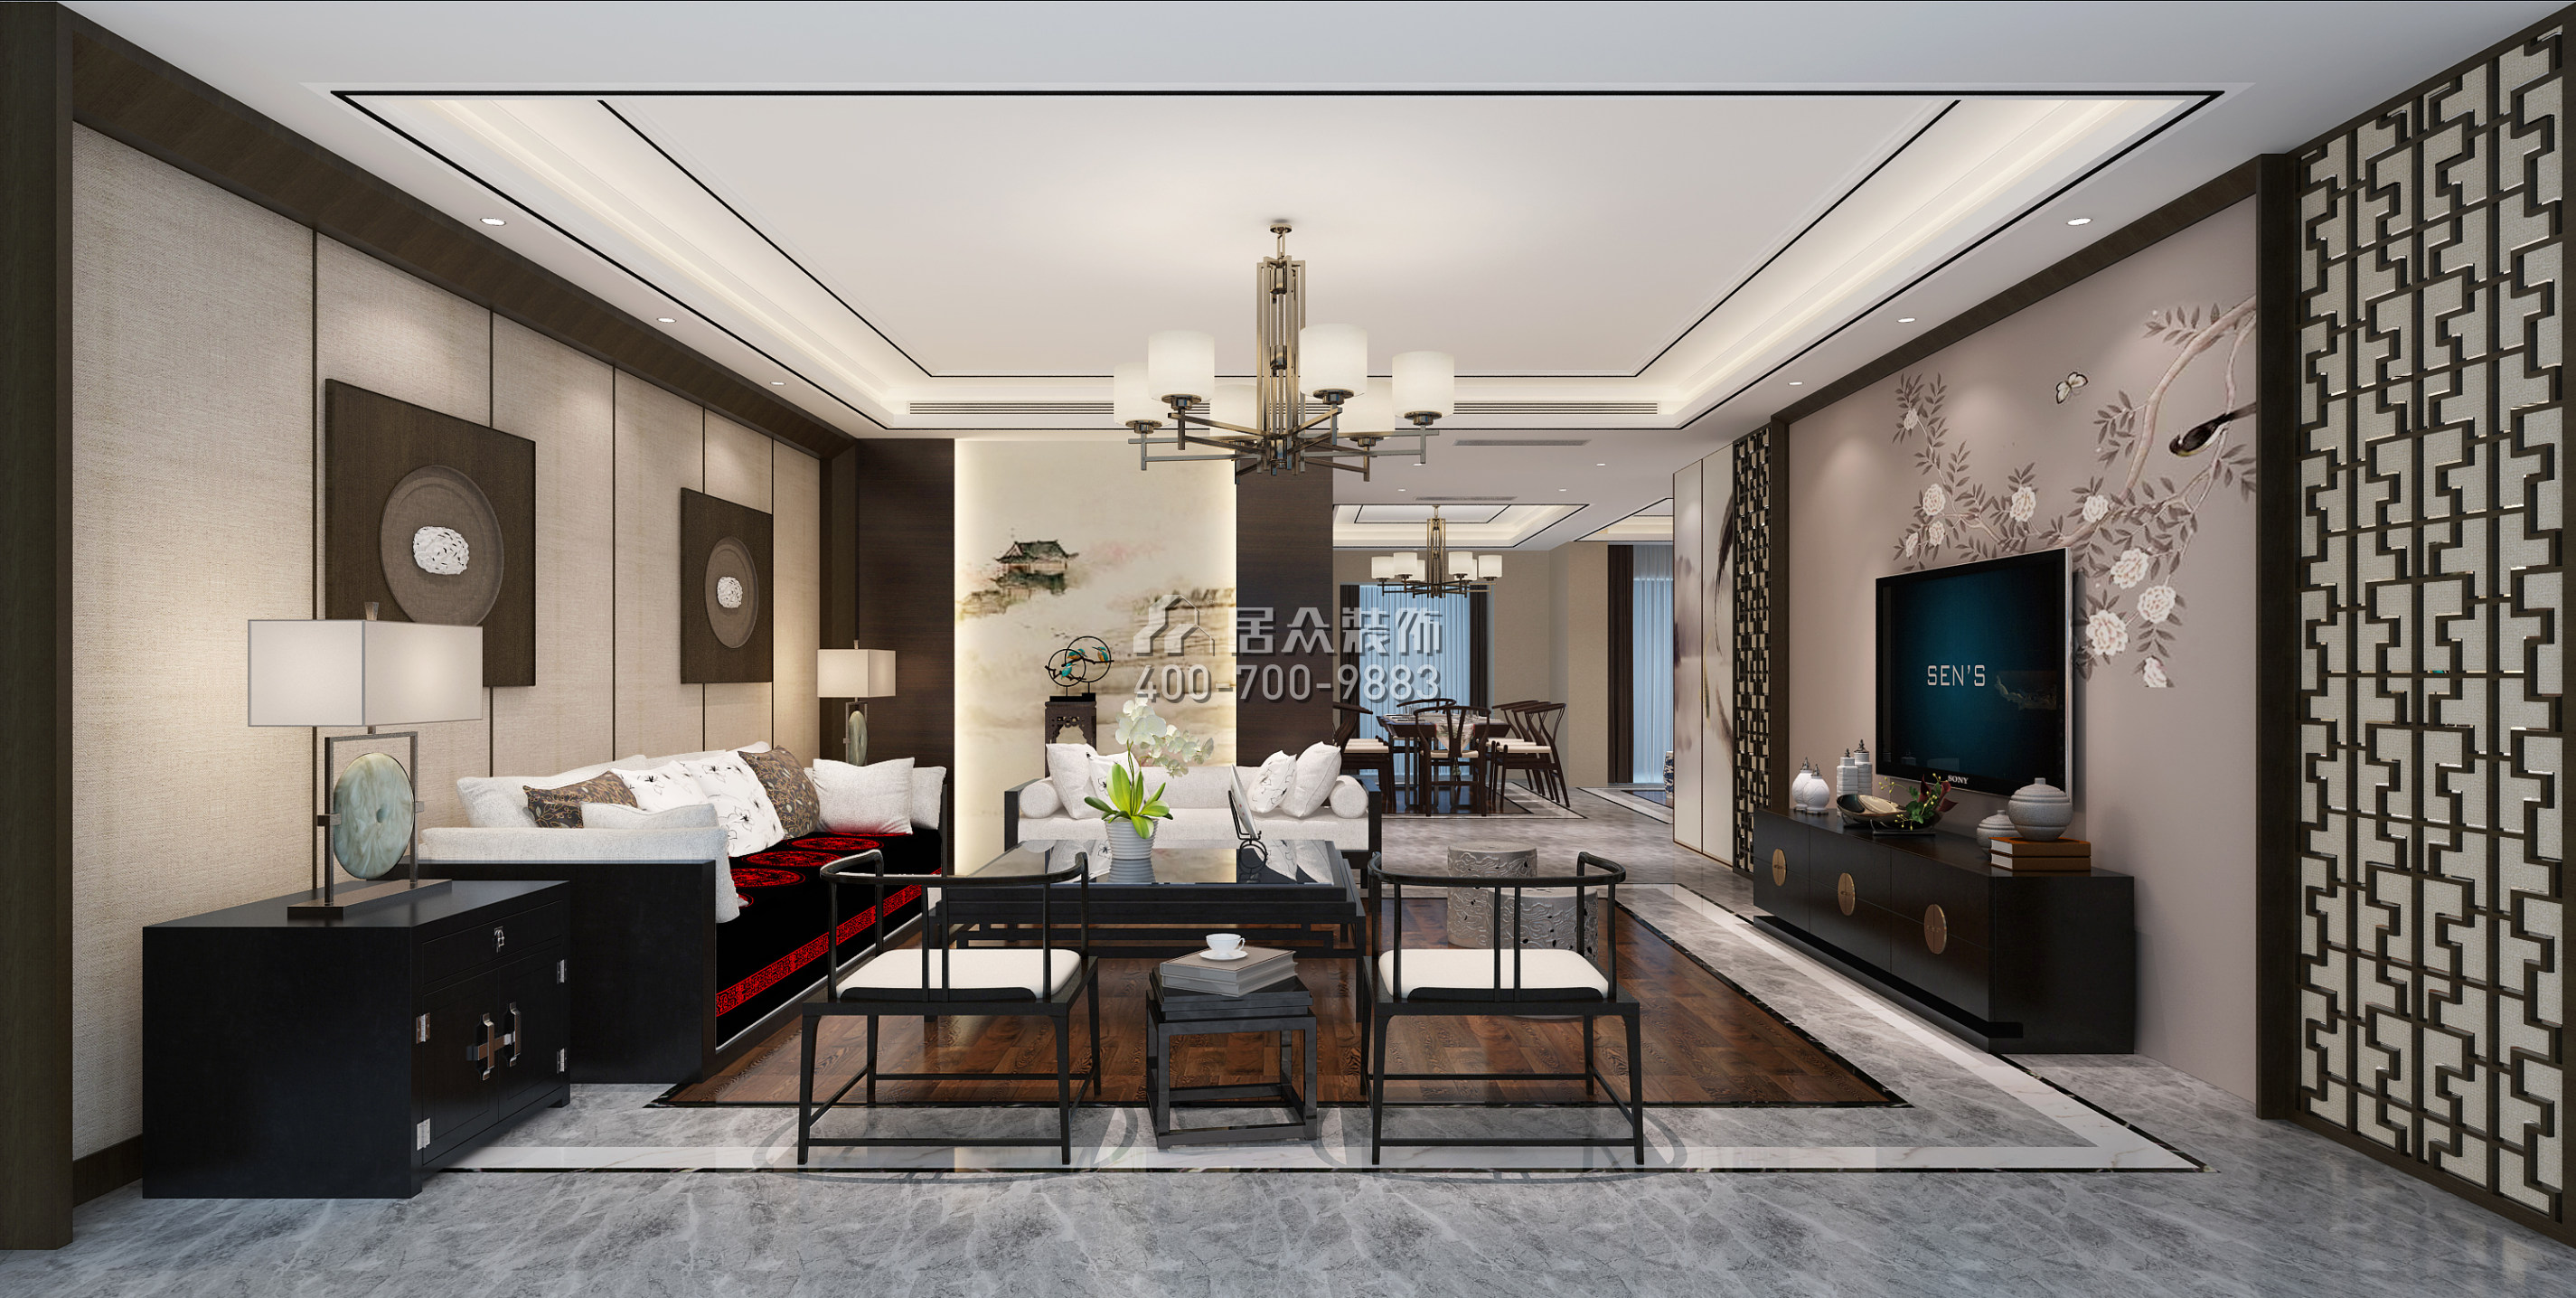 山语清晖一期220平方米中式风格平层户型客厅装修效果图